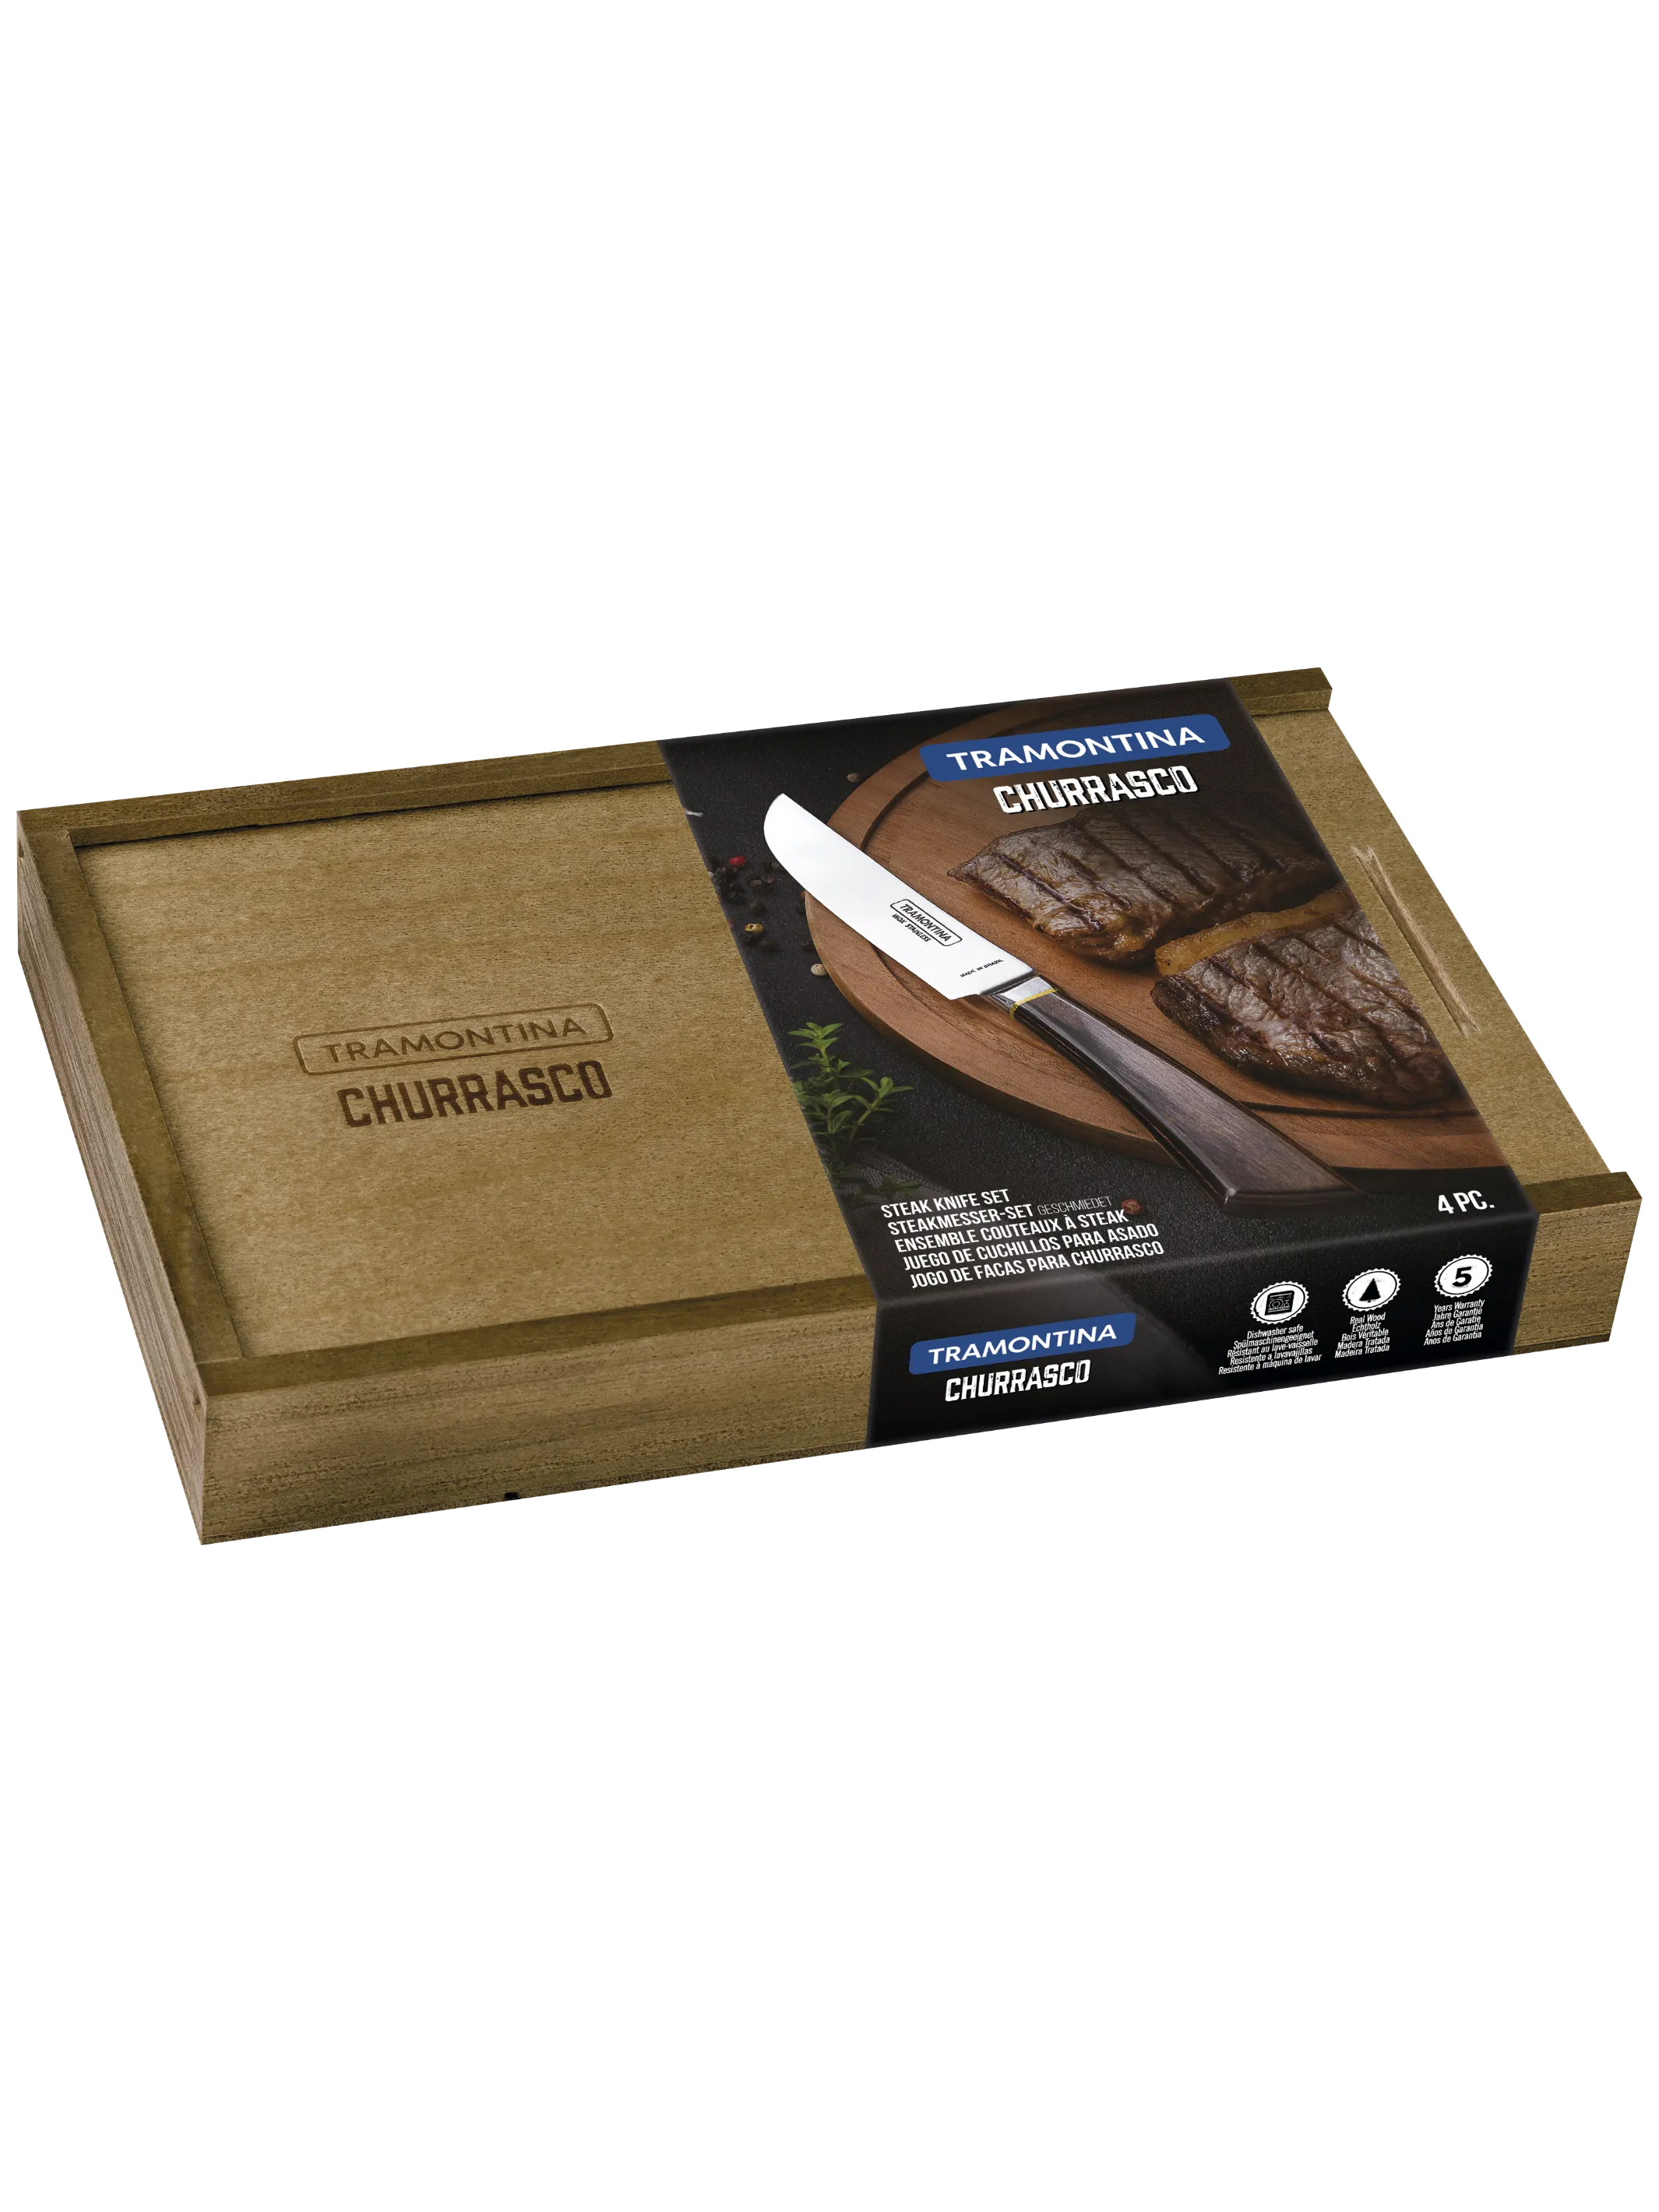 Tramontina 29899535 Churrasco Pampas kovácsoltvas steak kés szett fa dobozban 4db